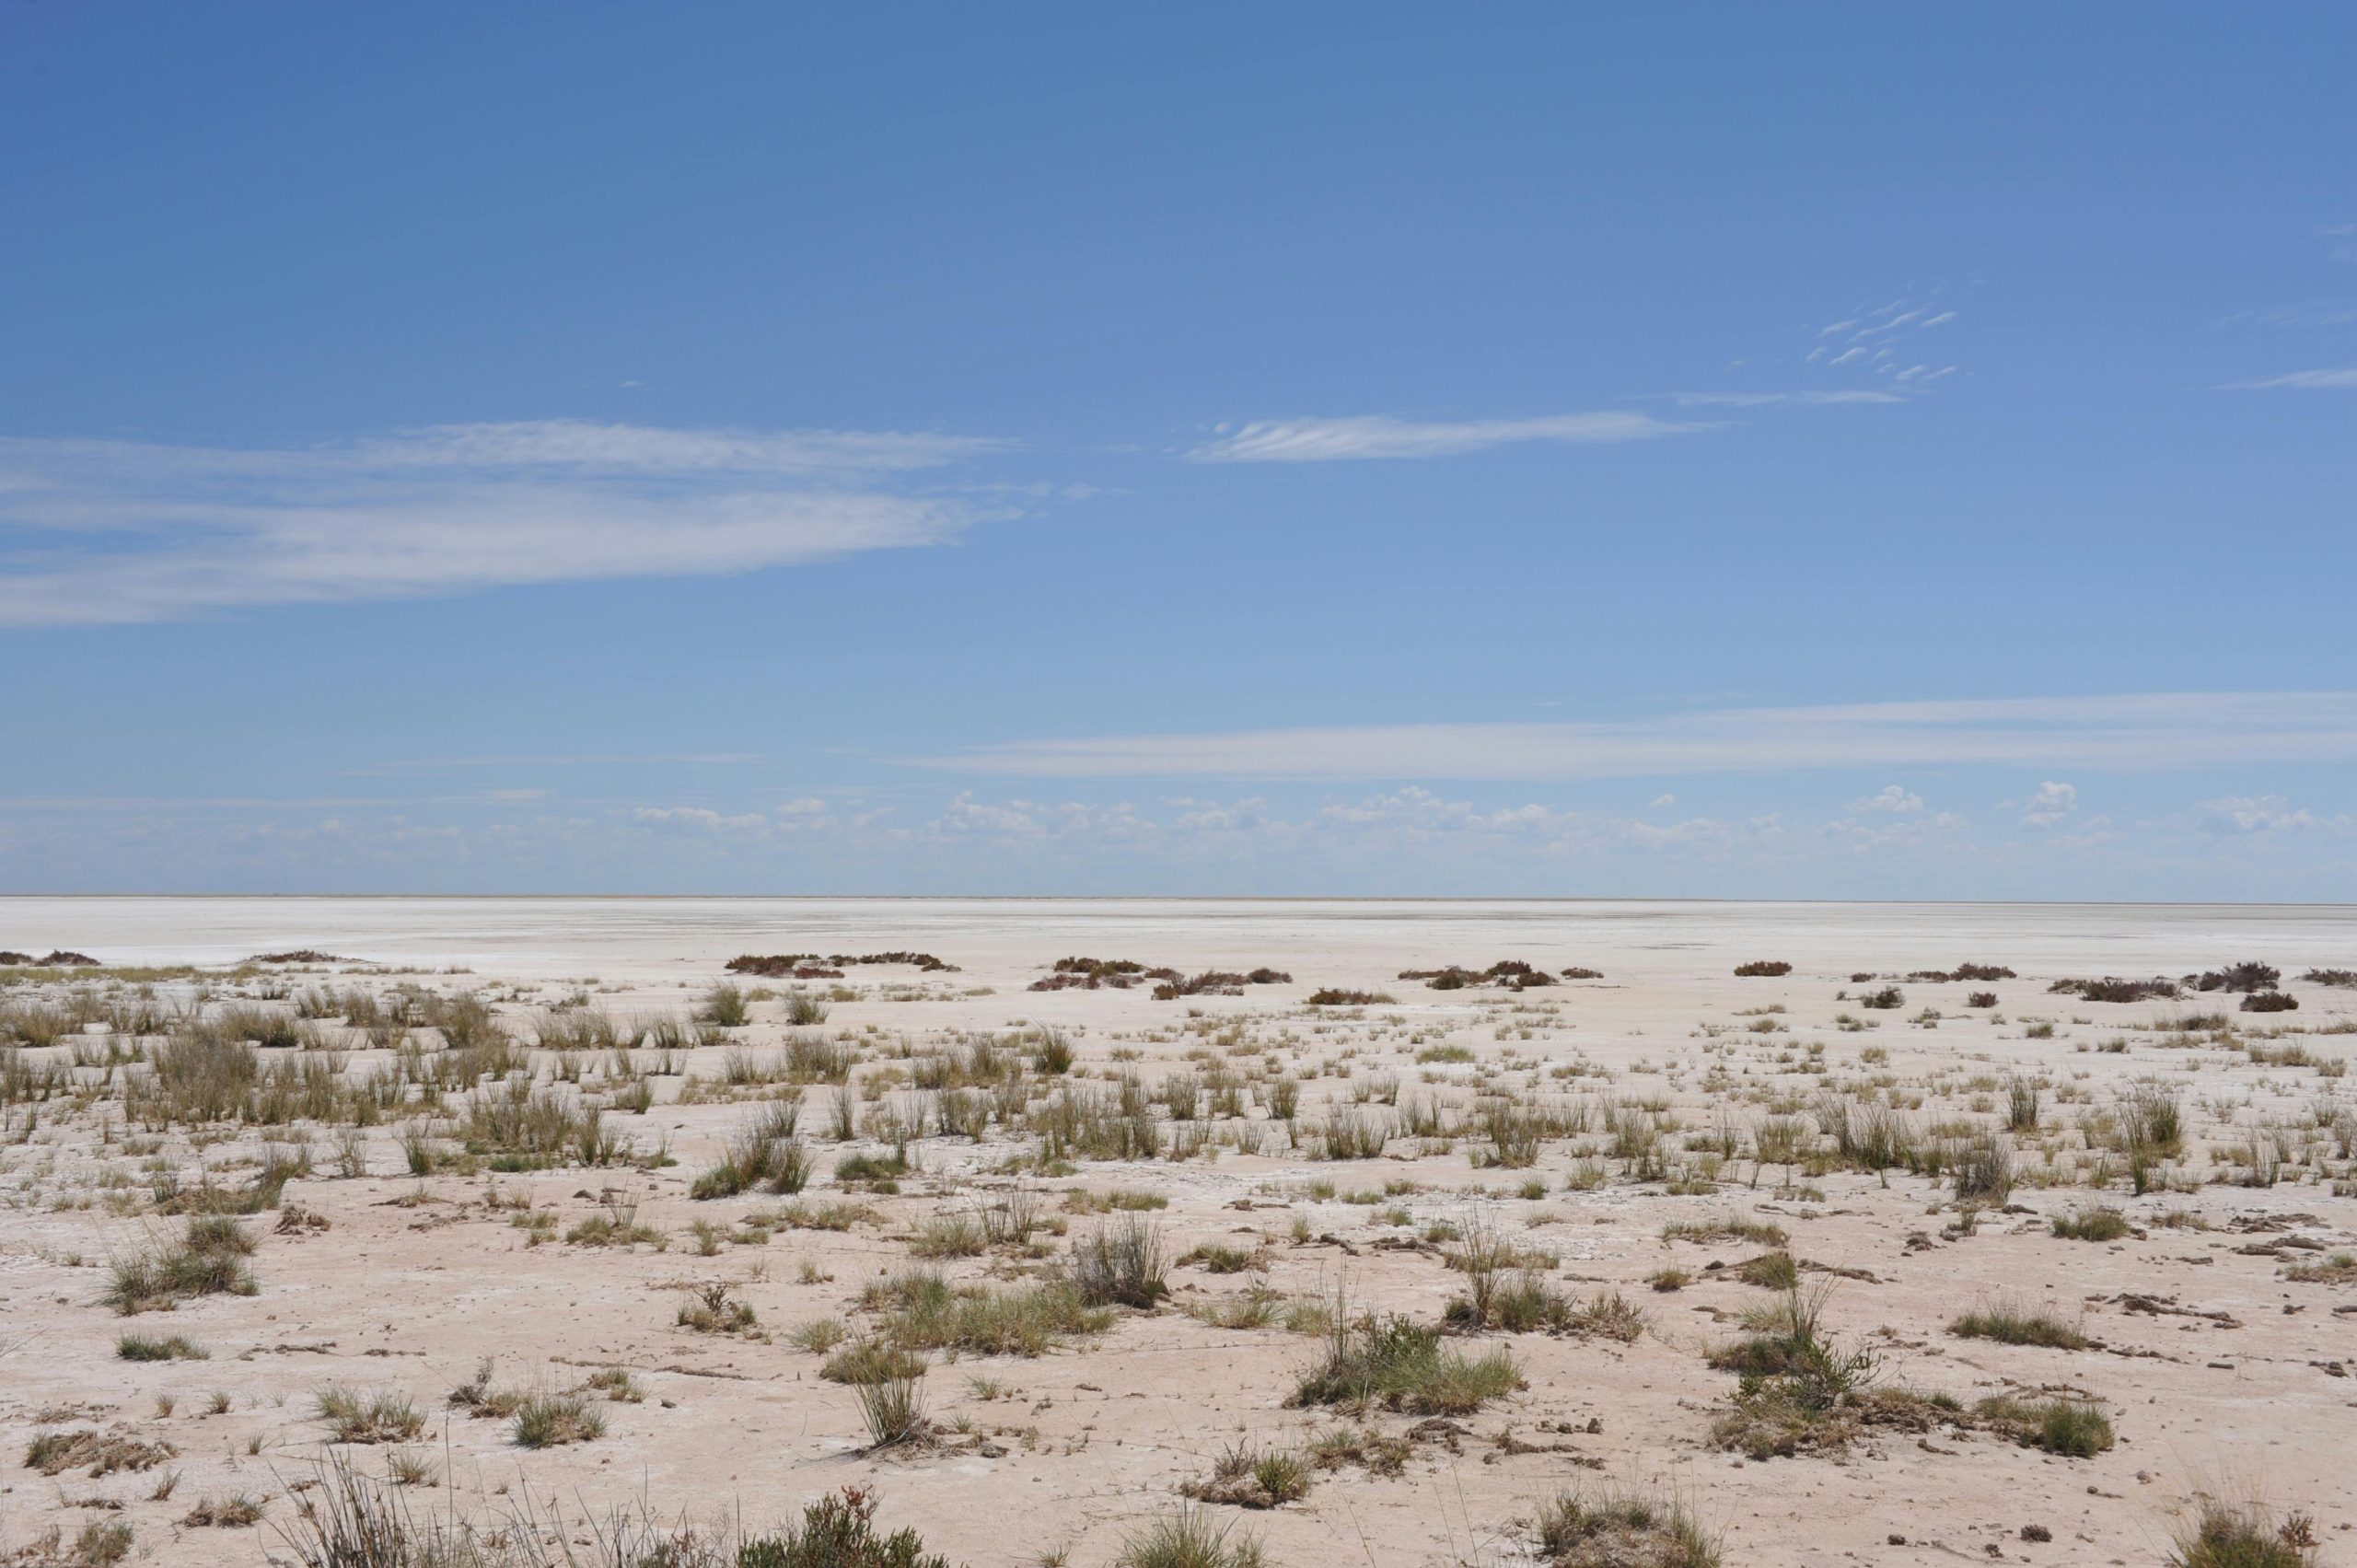 A dry and barren desert landscape.